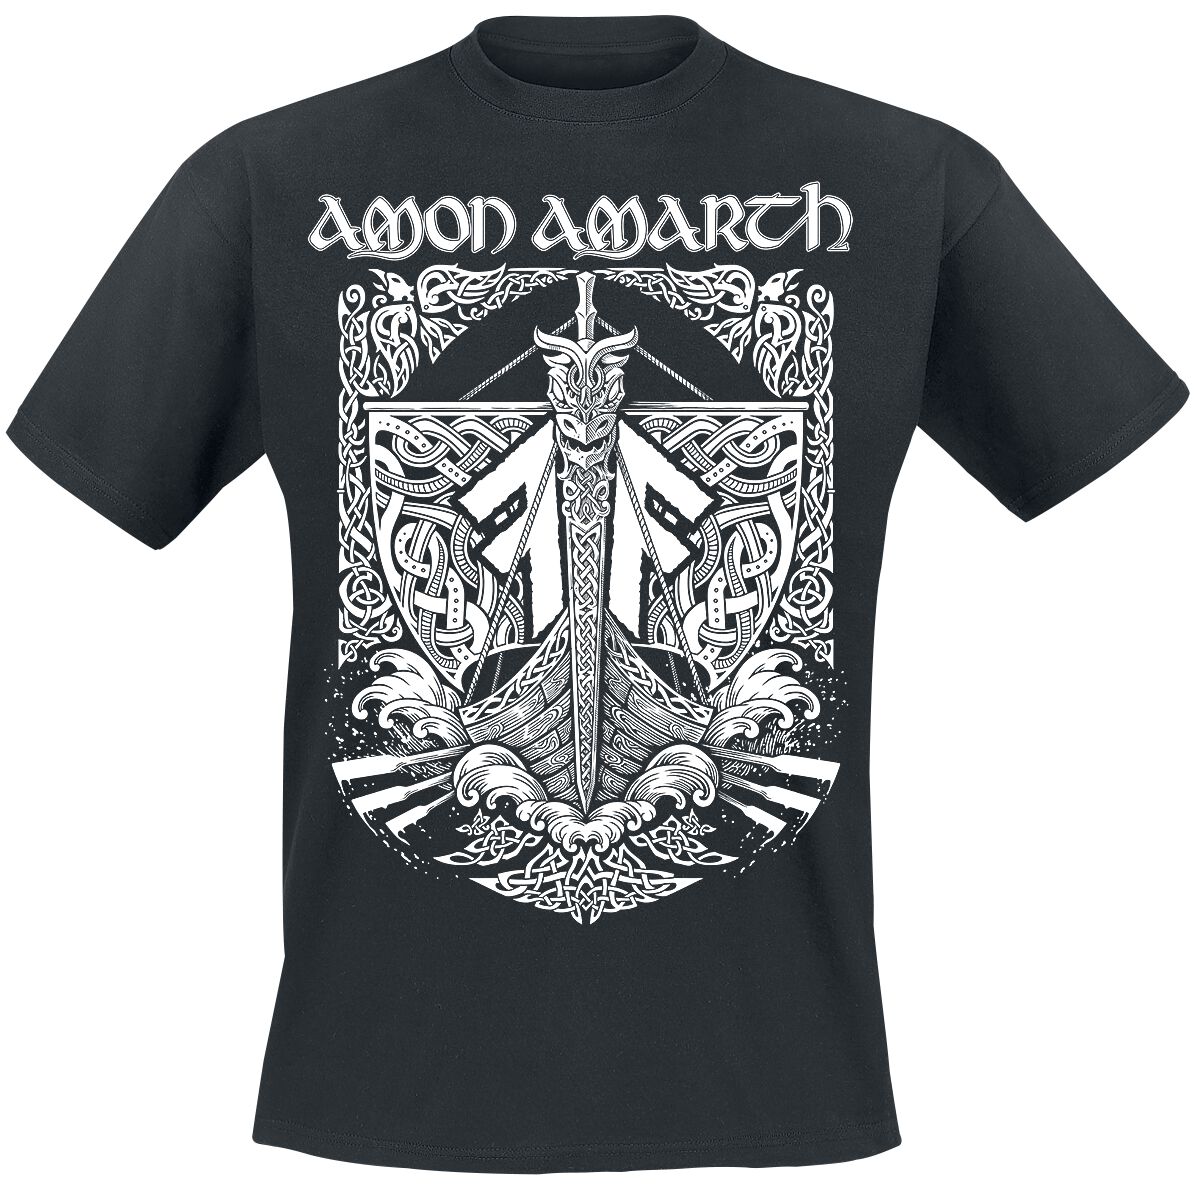 Amon Amarth T-Shirt - Put your back into the oar - S bis 3XL - für Männer - Größe S - schwarz  - Lizenziertes Merchandise!